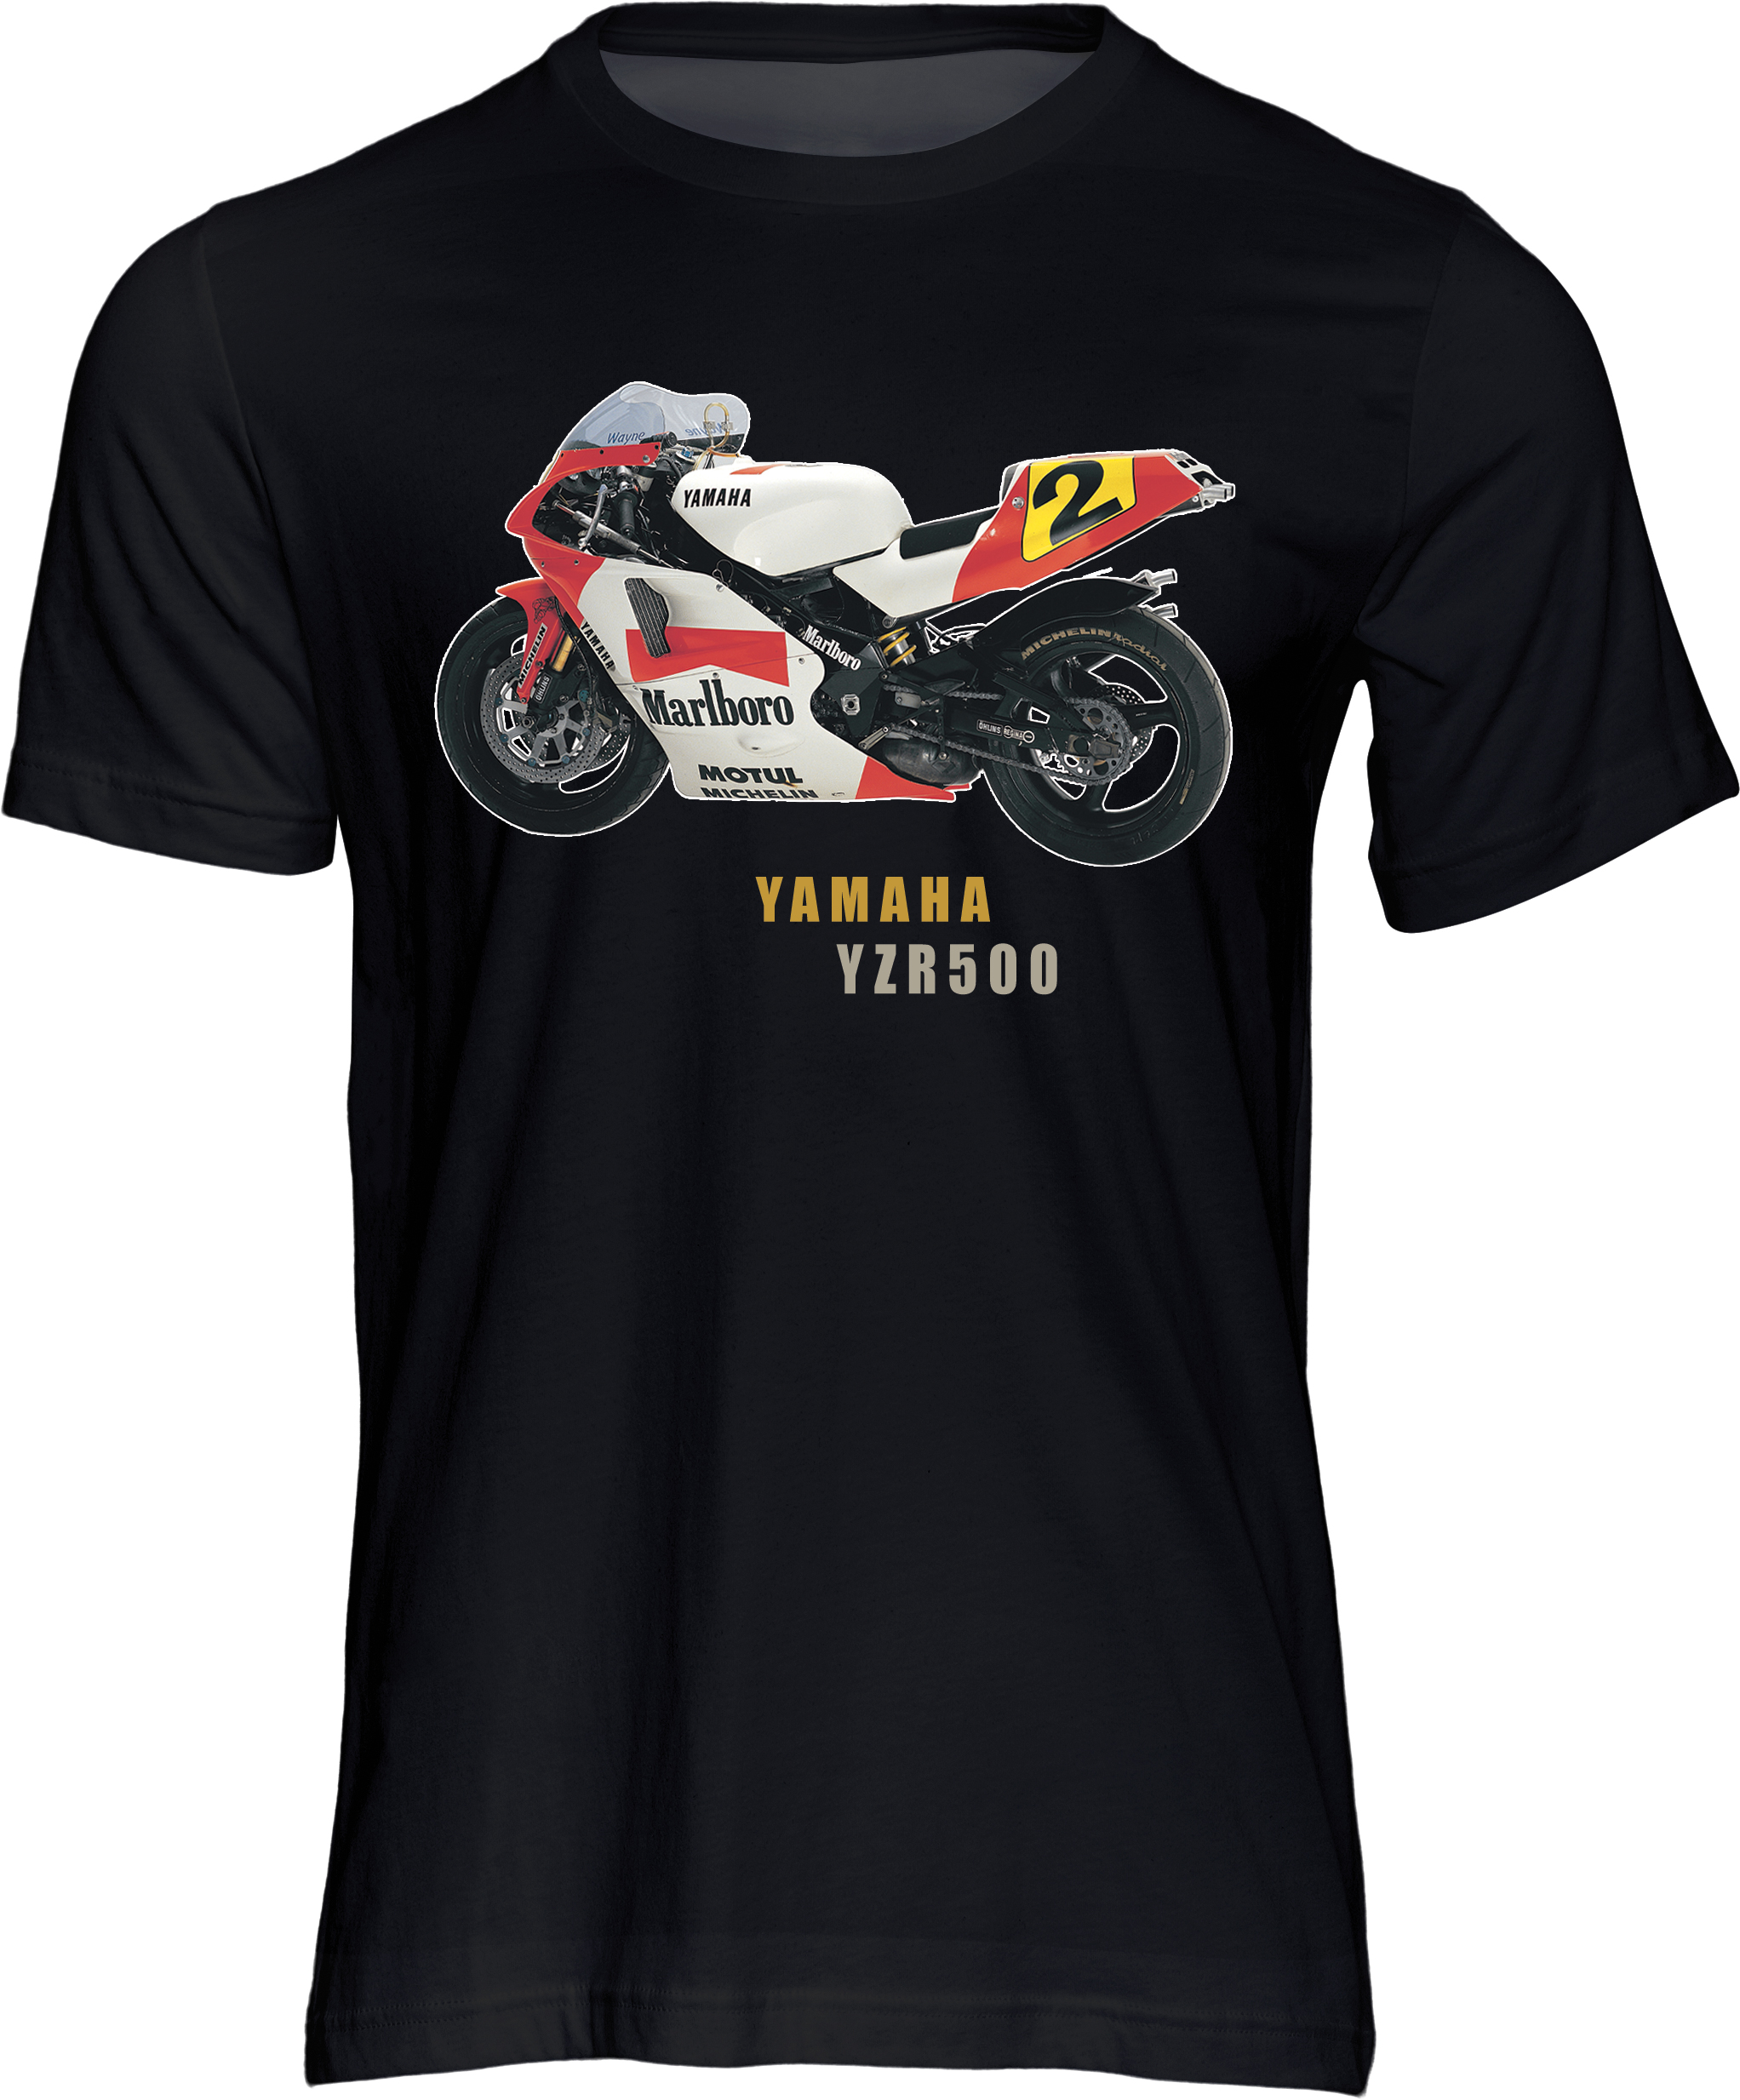 Yamaha YZR500 T-shirt Black